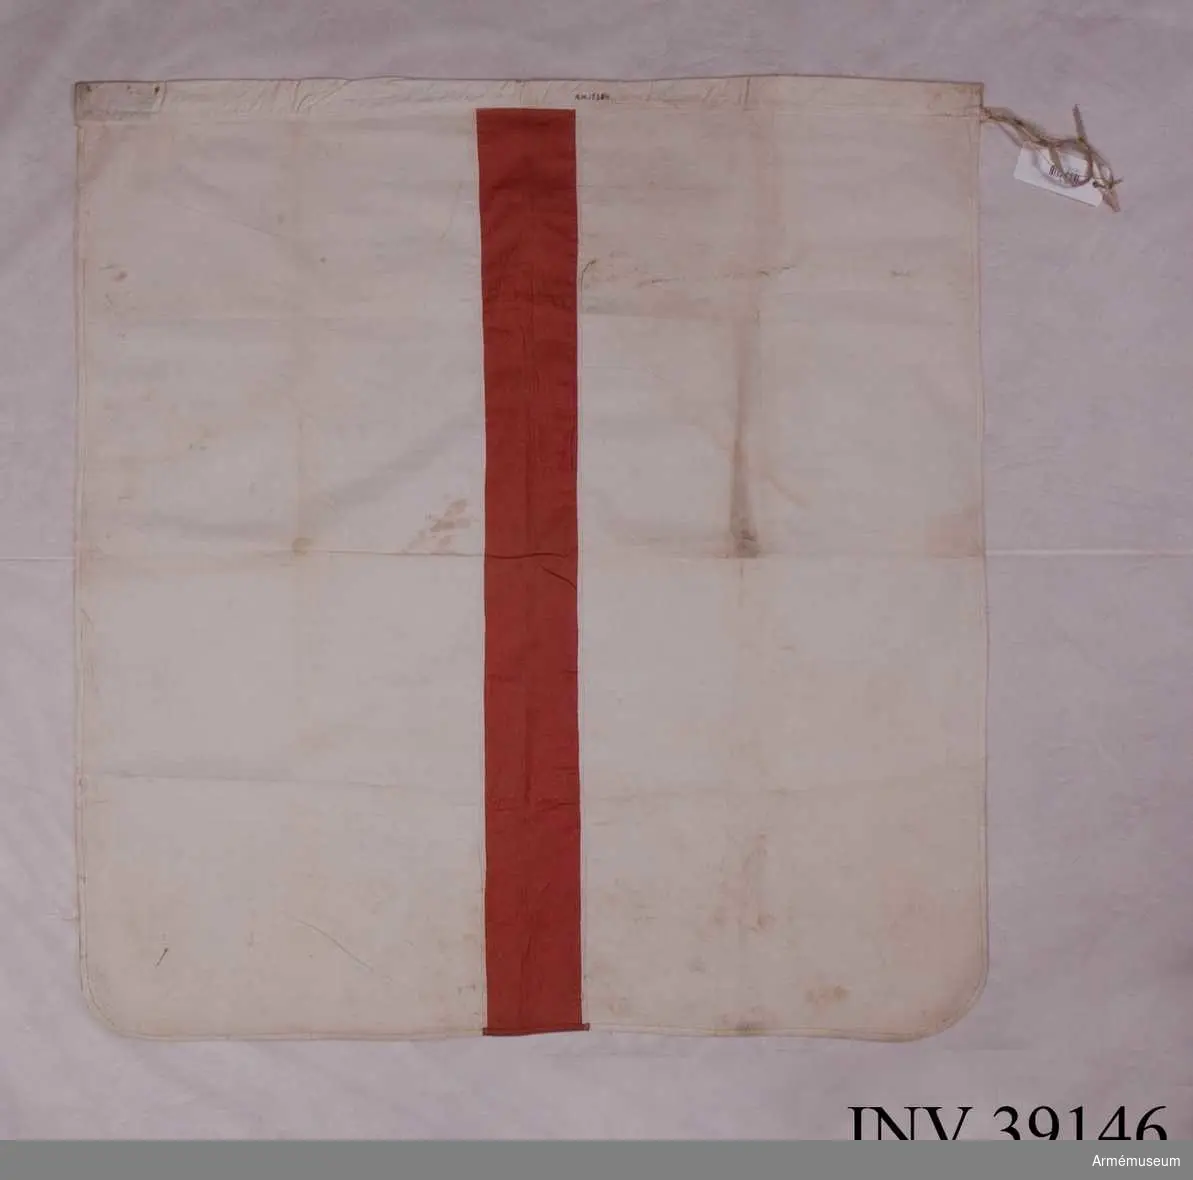 Grupp H III.

Vit flagga med ett rött tvärstreck, 10 cm brett. 
Kanal upptill, 4 cm bred, och band för fastsättning på stången. 
Måttet 87x87 cm är exklusive kanal.Enligt GK 1981.